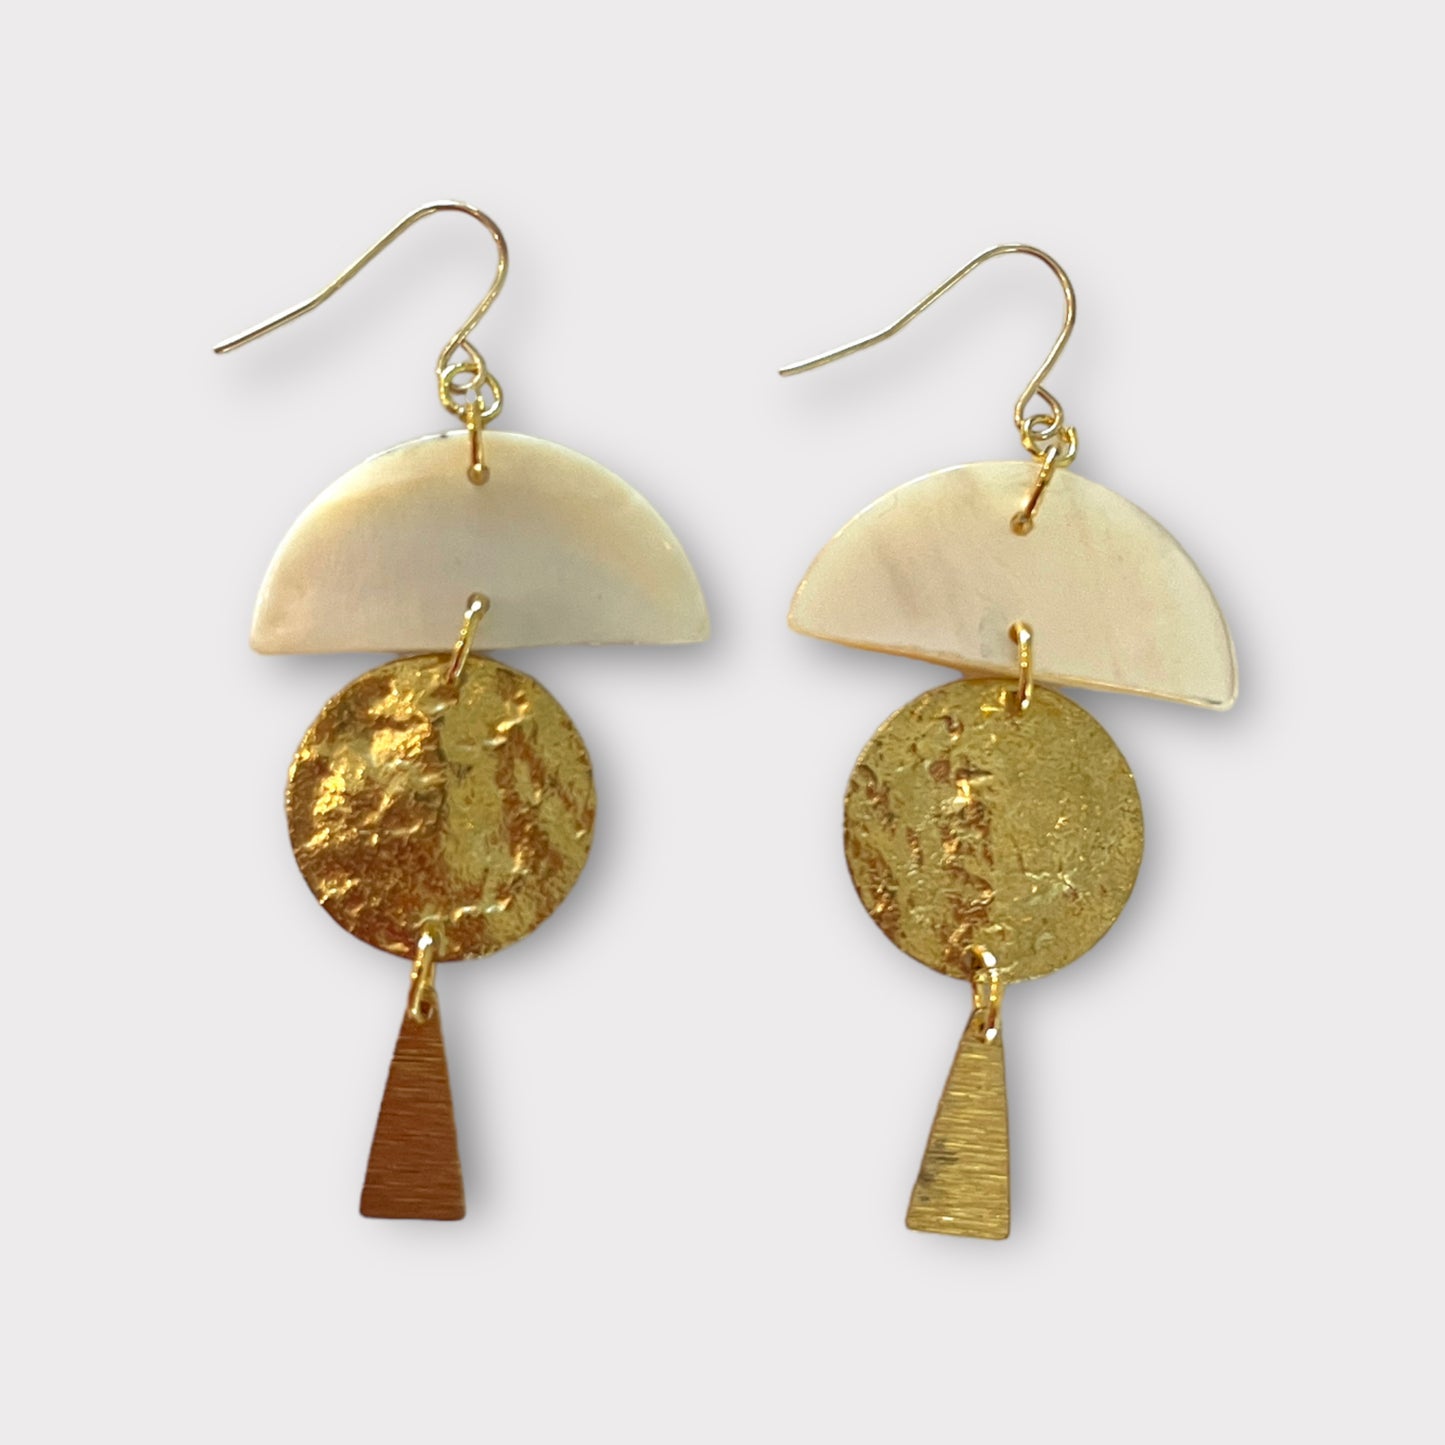 Shell coin earrings